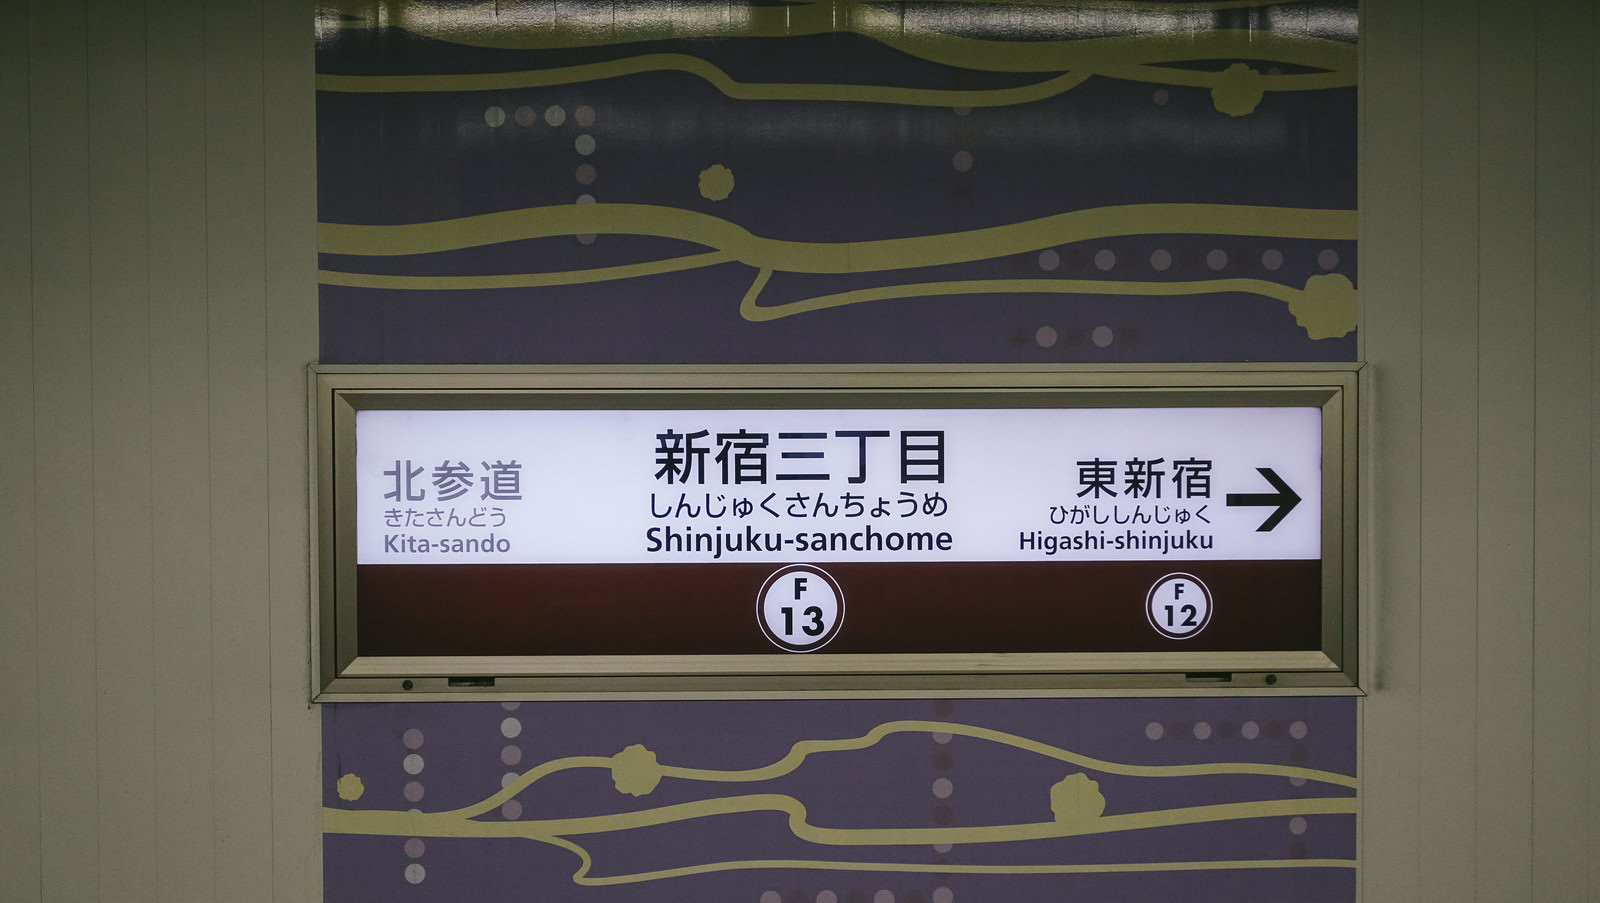 「新宿三丁目駅の案内板 | フリー素材のぱくたそ」の写真